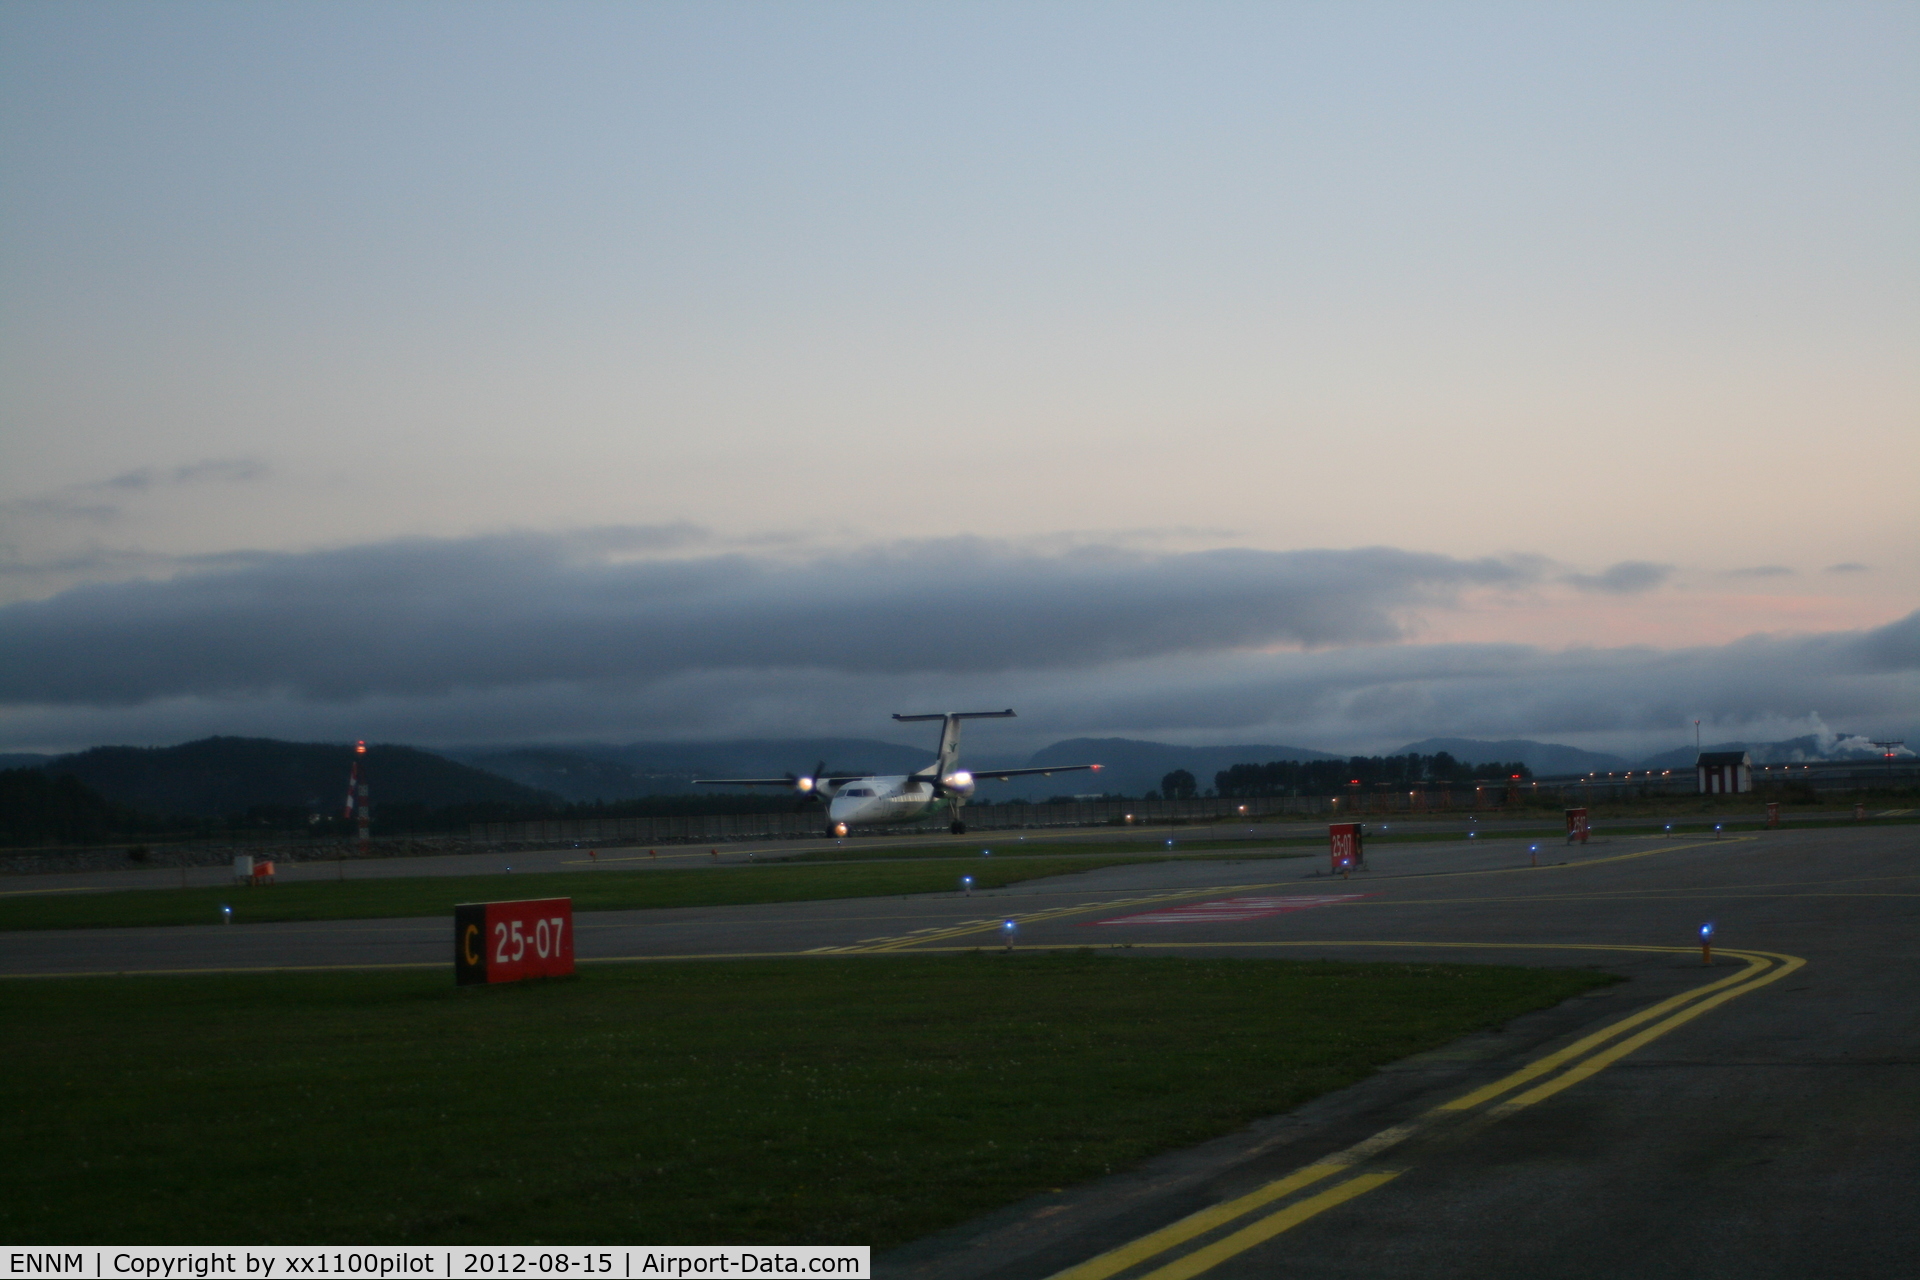 Namsos Airport, Namsos, Nord-Trøndelag Norway (ENNM) - One Runway 07-25. Sceduled flights by Wideröe.